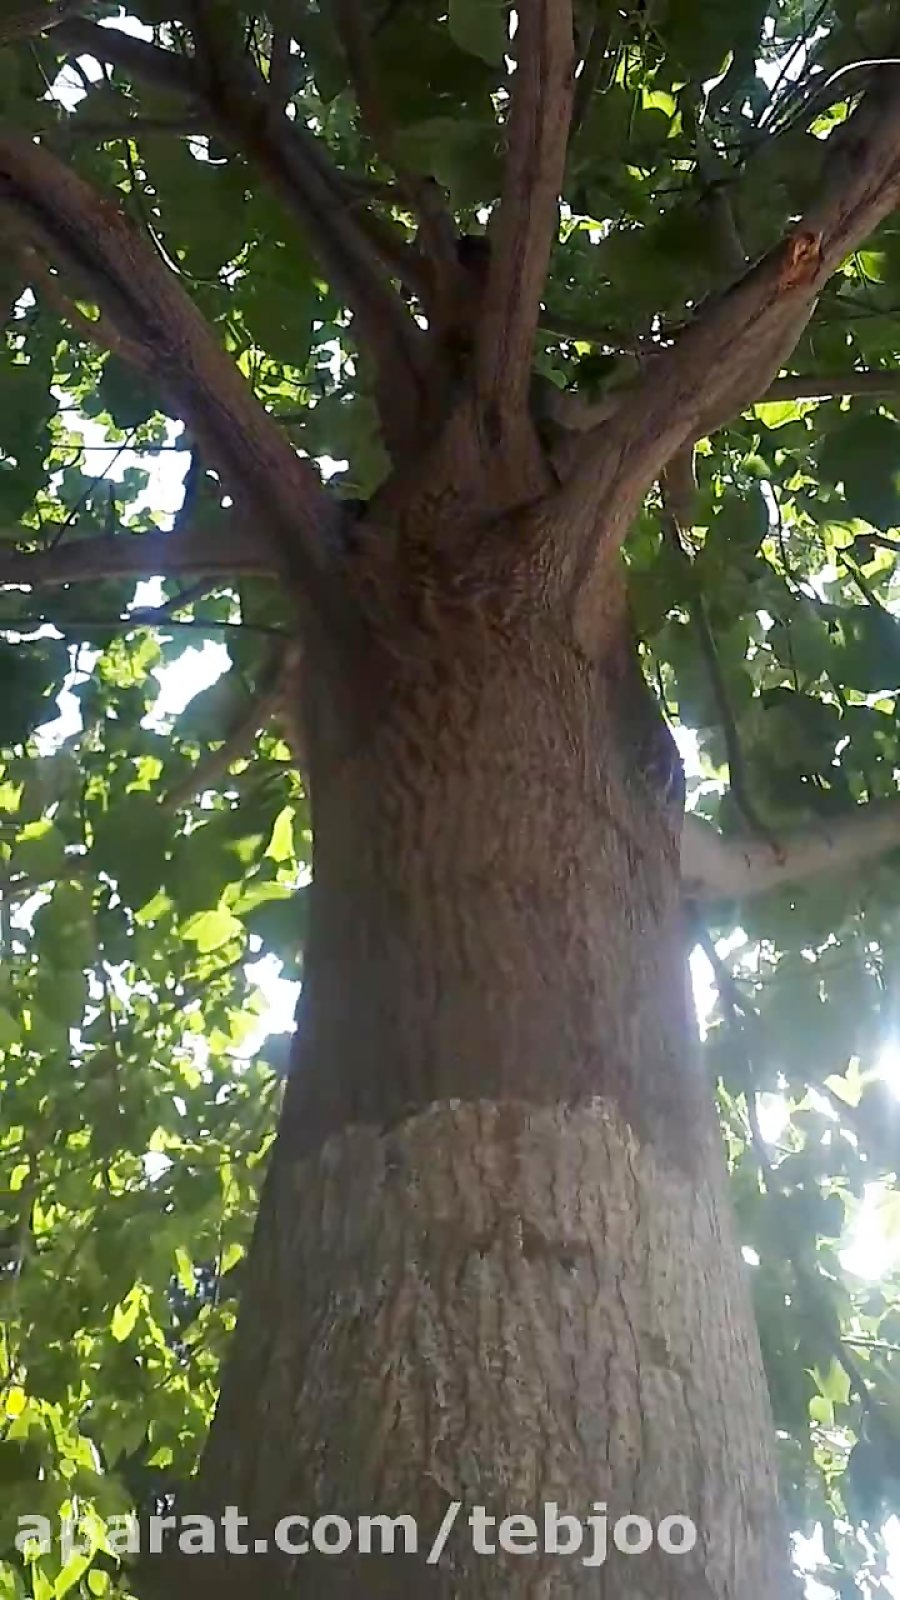 درخت پالونیا ۶ ساله از گیاه پائولونیا ی هیبرید طب جو شیراز 09173056193